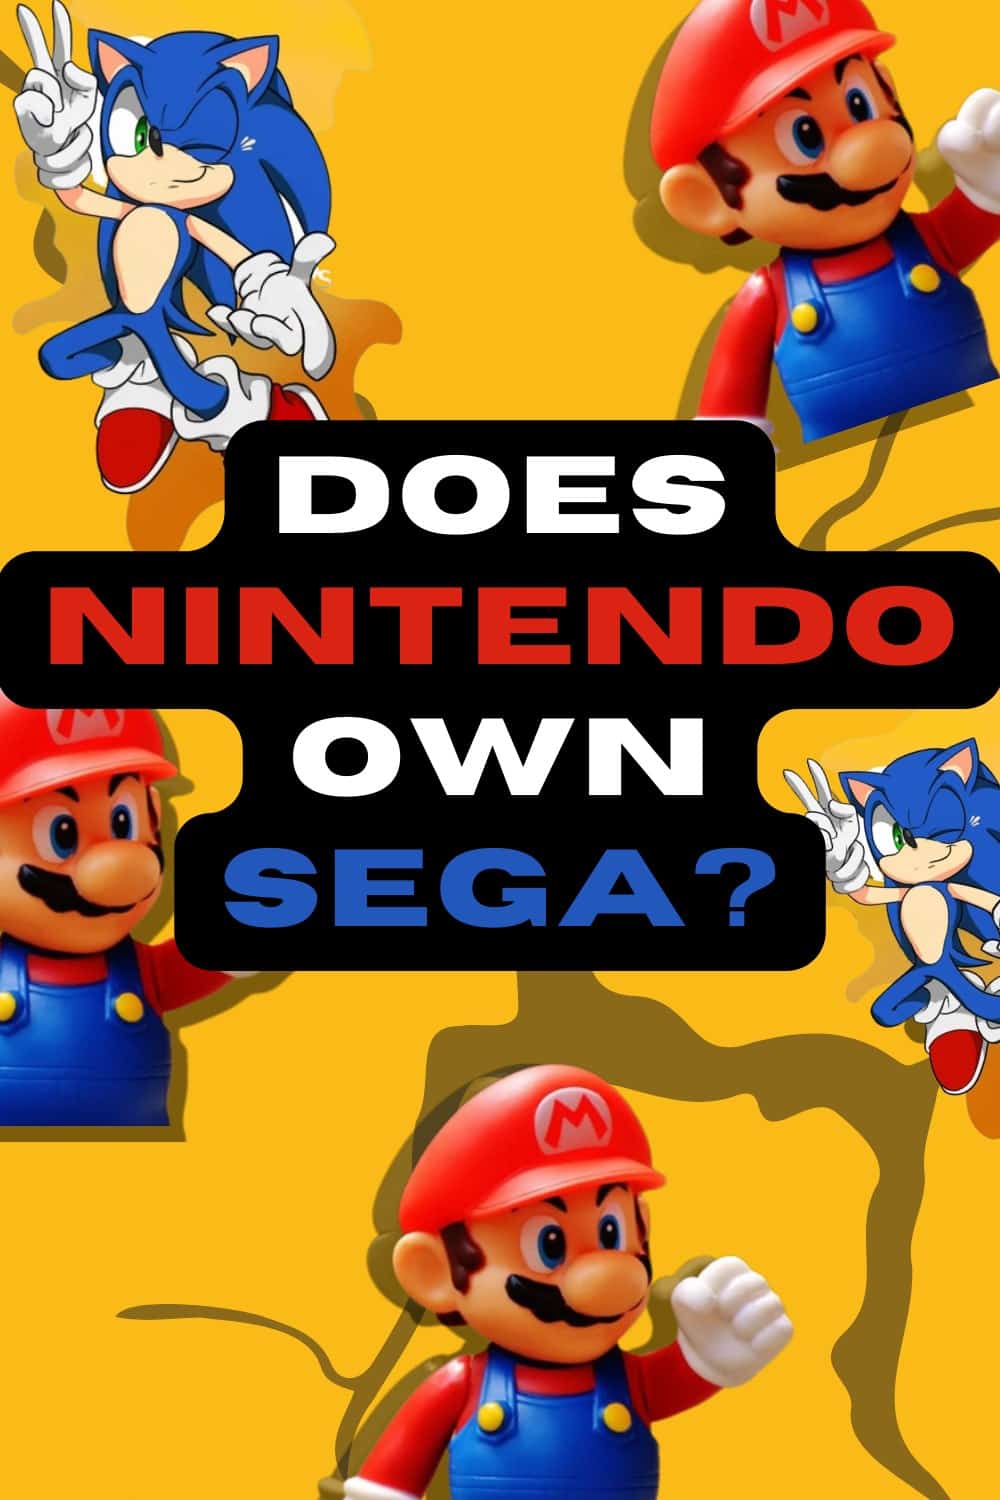 Nintendo does not own SEGA